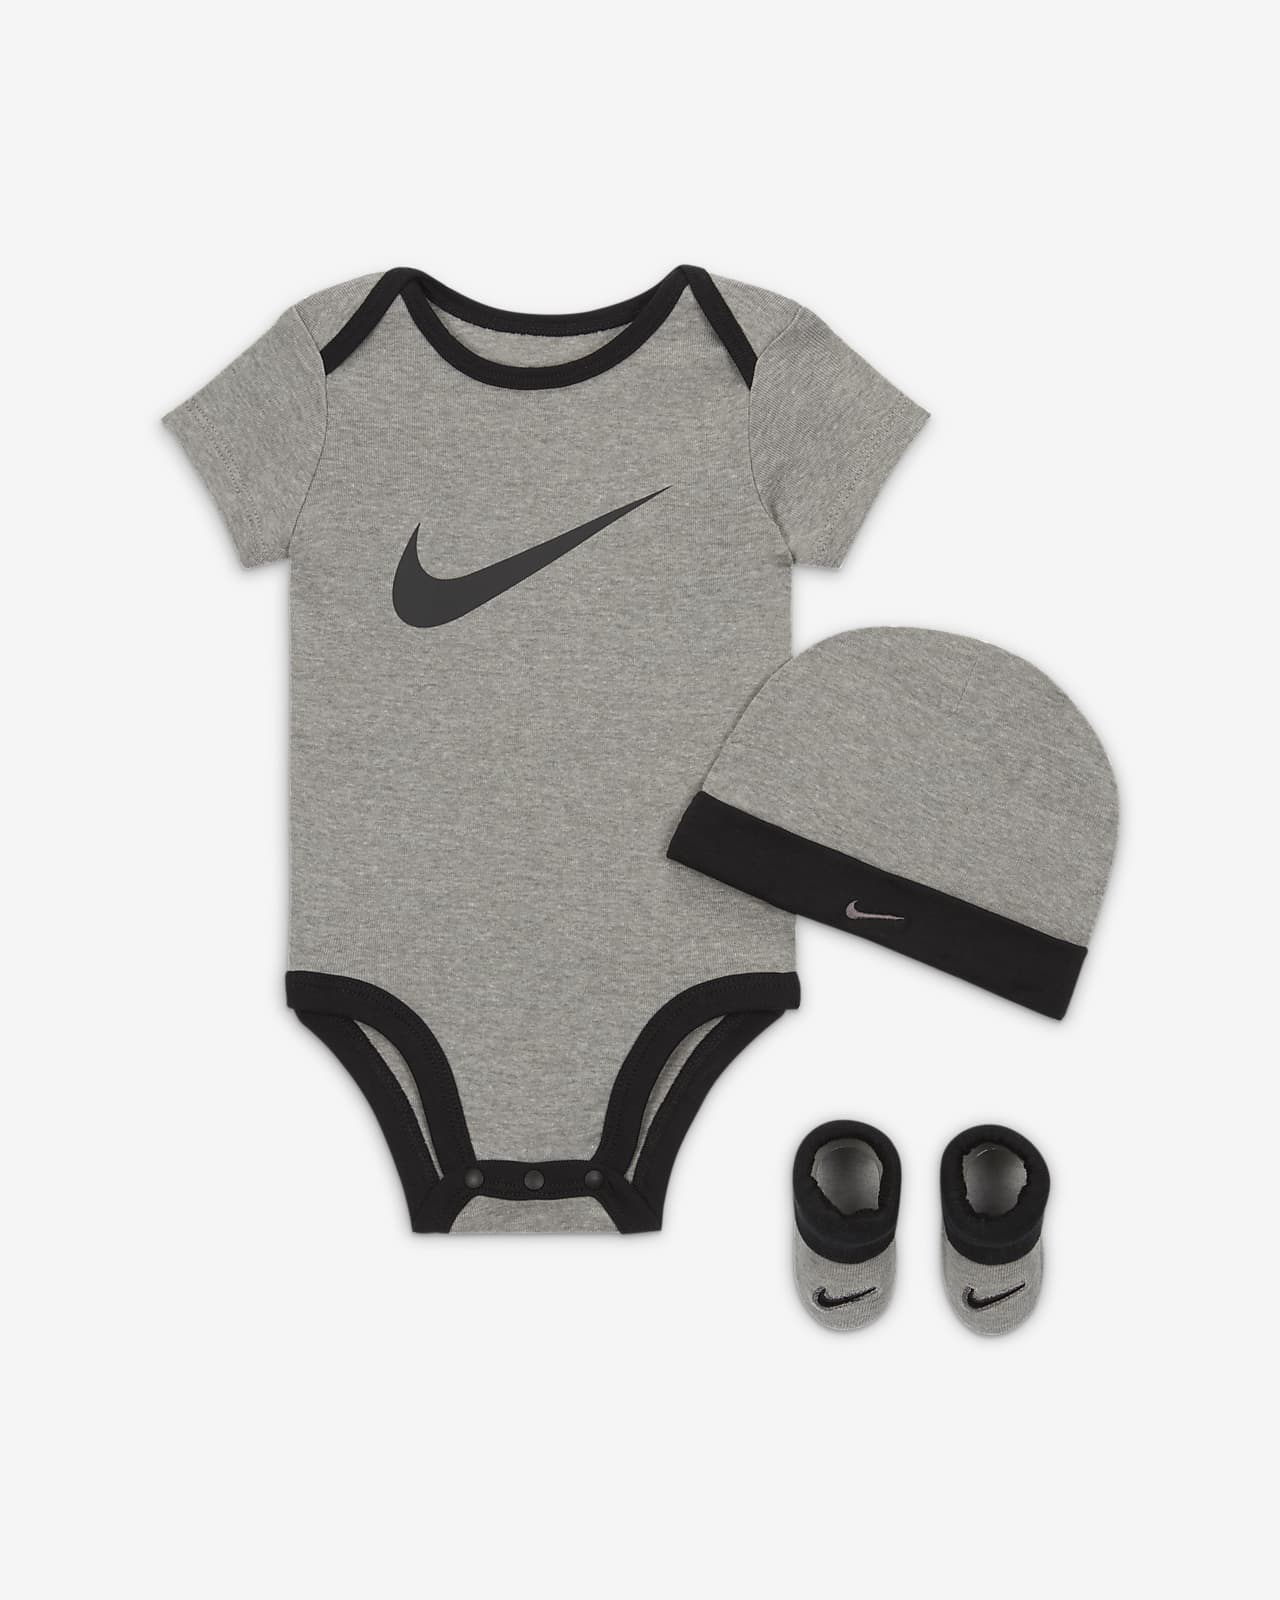 Nike Baby 3-Piece Box Set | lupon.gov.ph